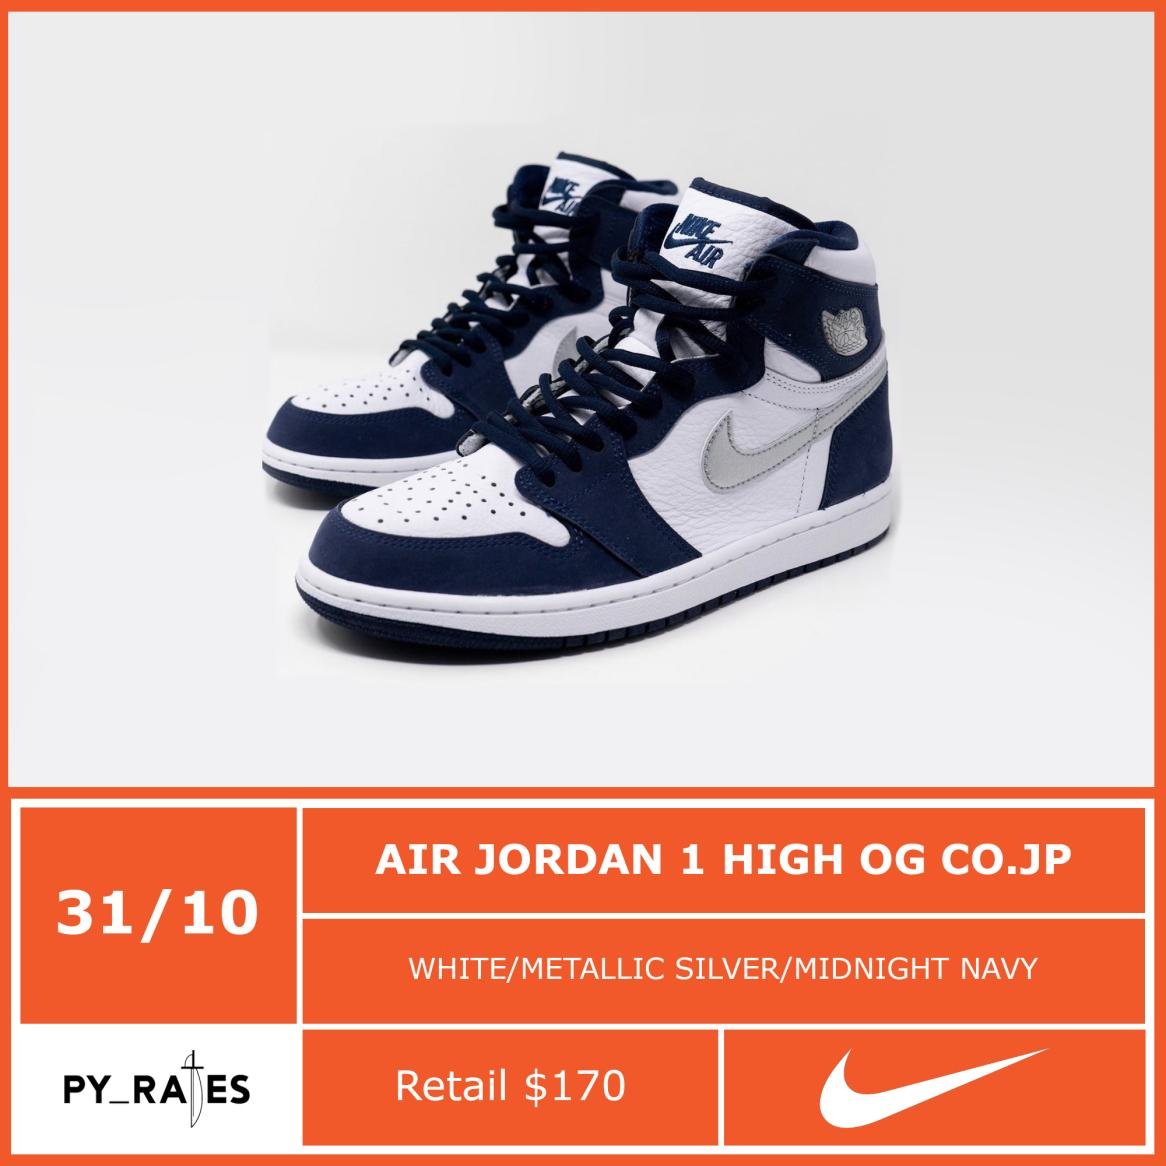 Air Jordan 1 High OG CO JP Midnight Navy Release Date